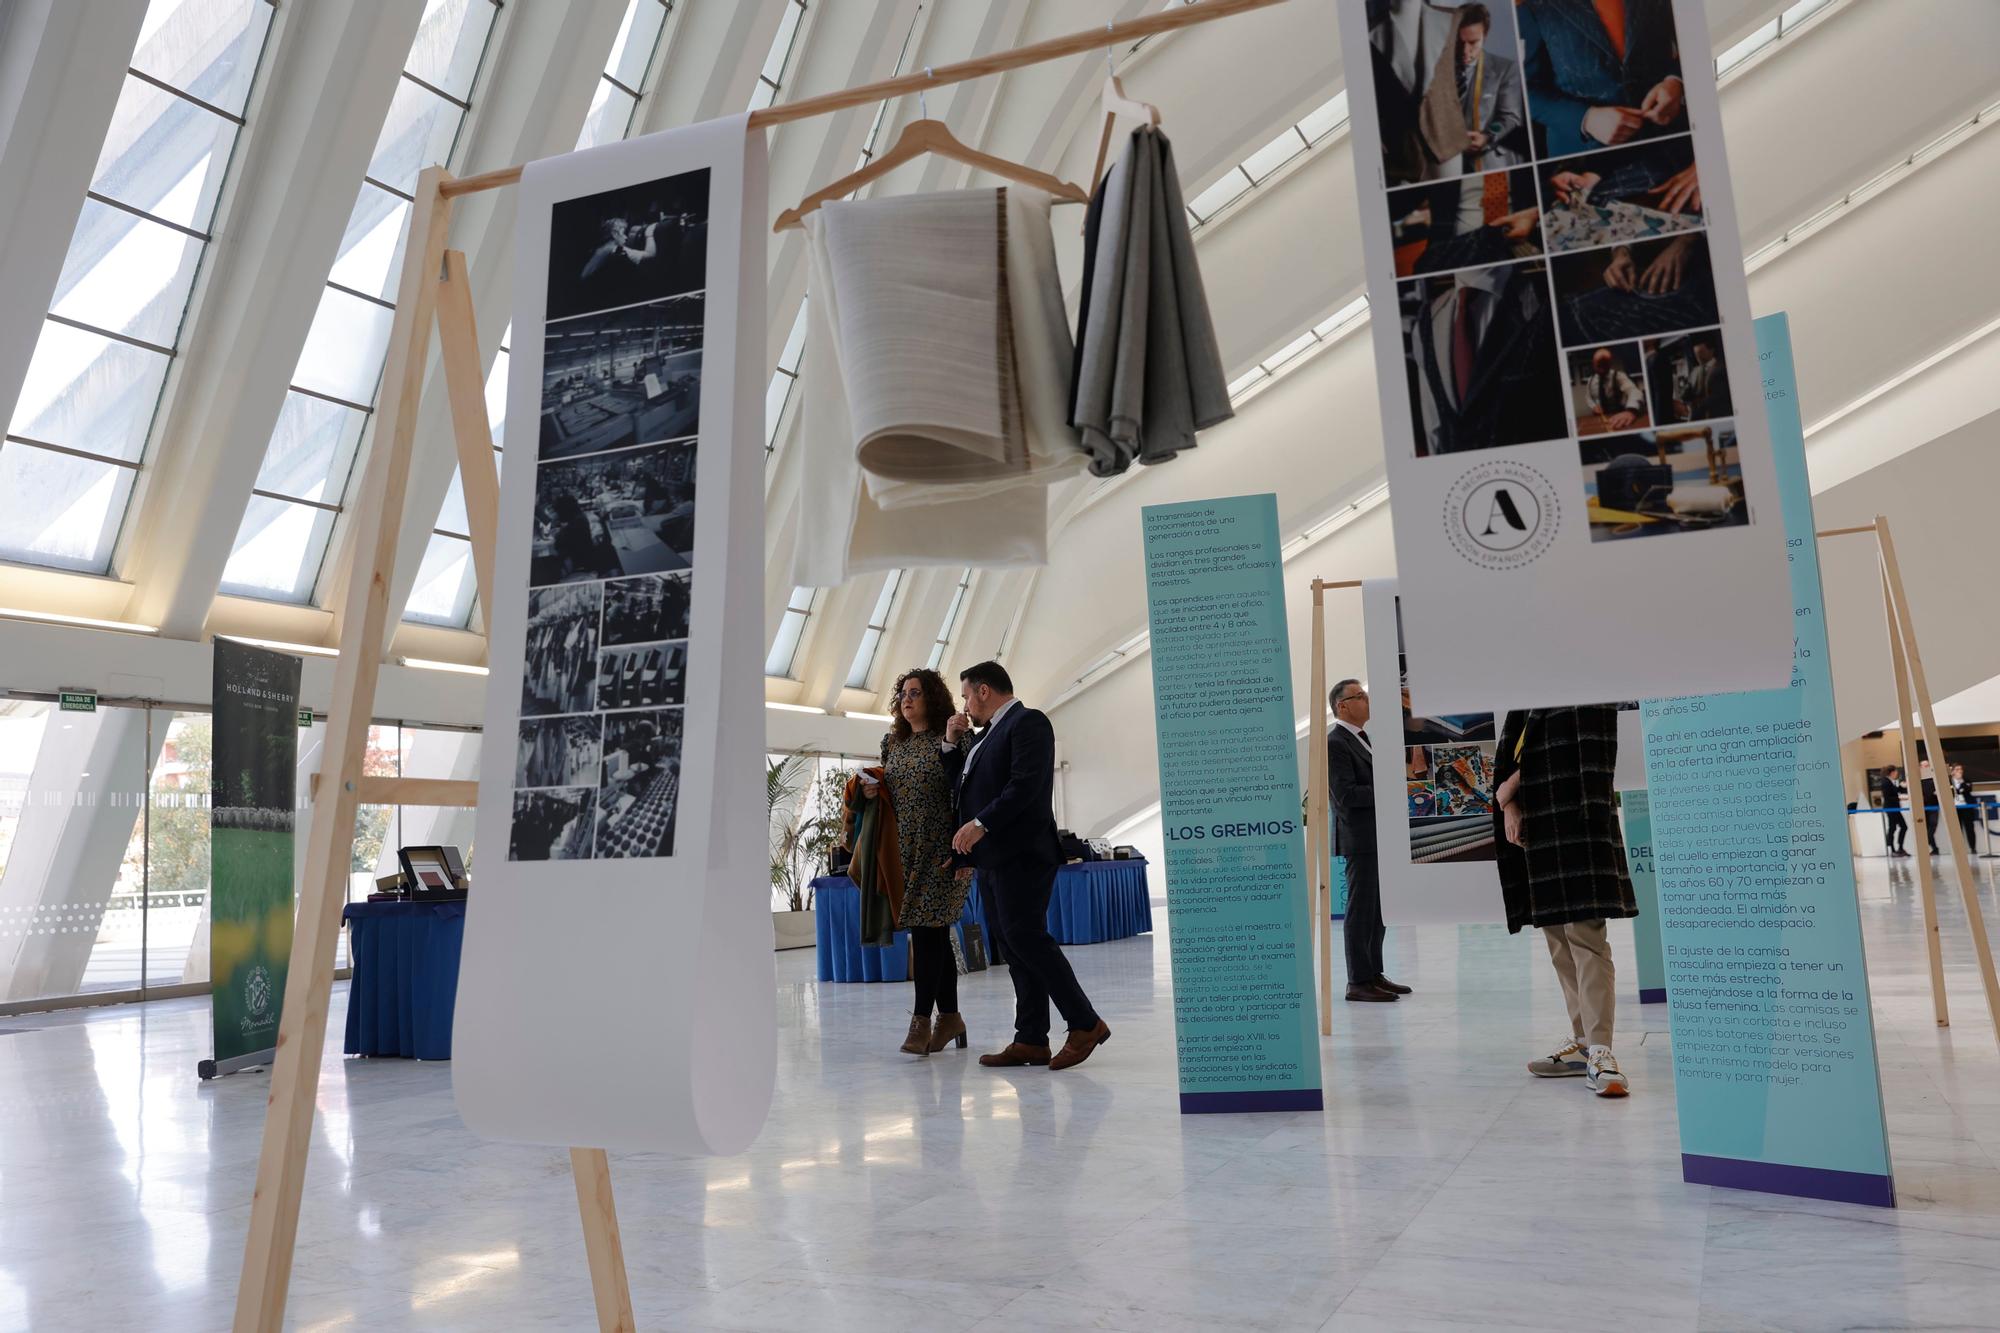 EN IMÁGENES: El Congreso Internacional de Sastrería llena el Calatrava en Oviedo